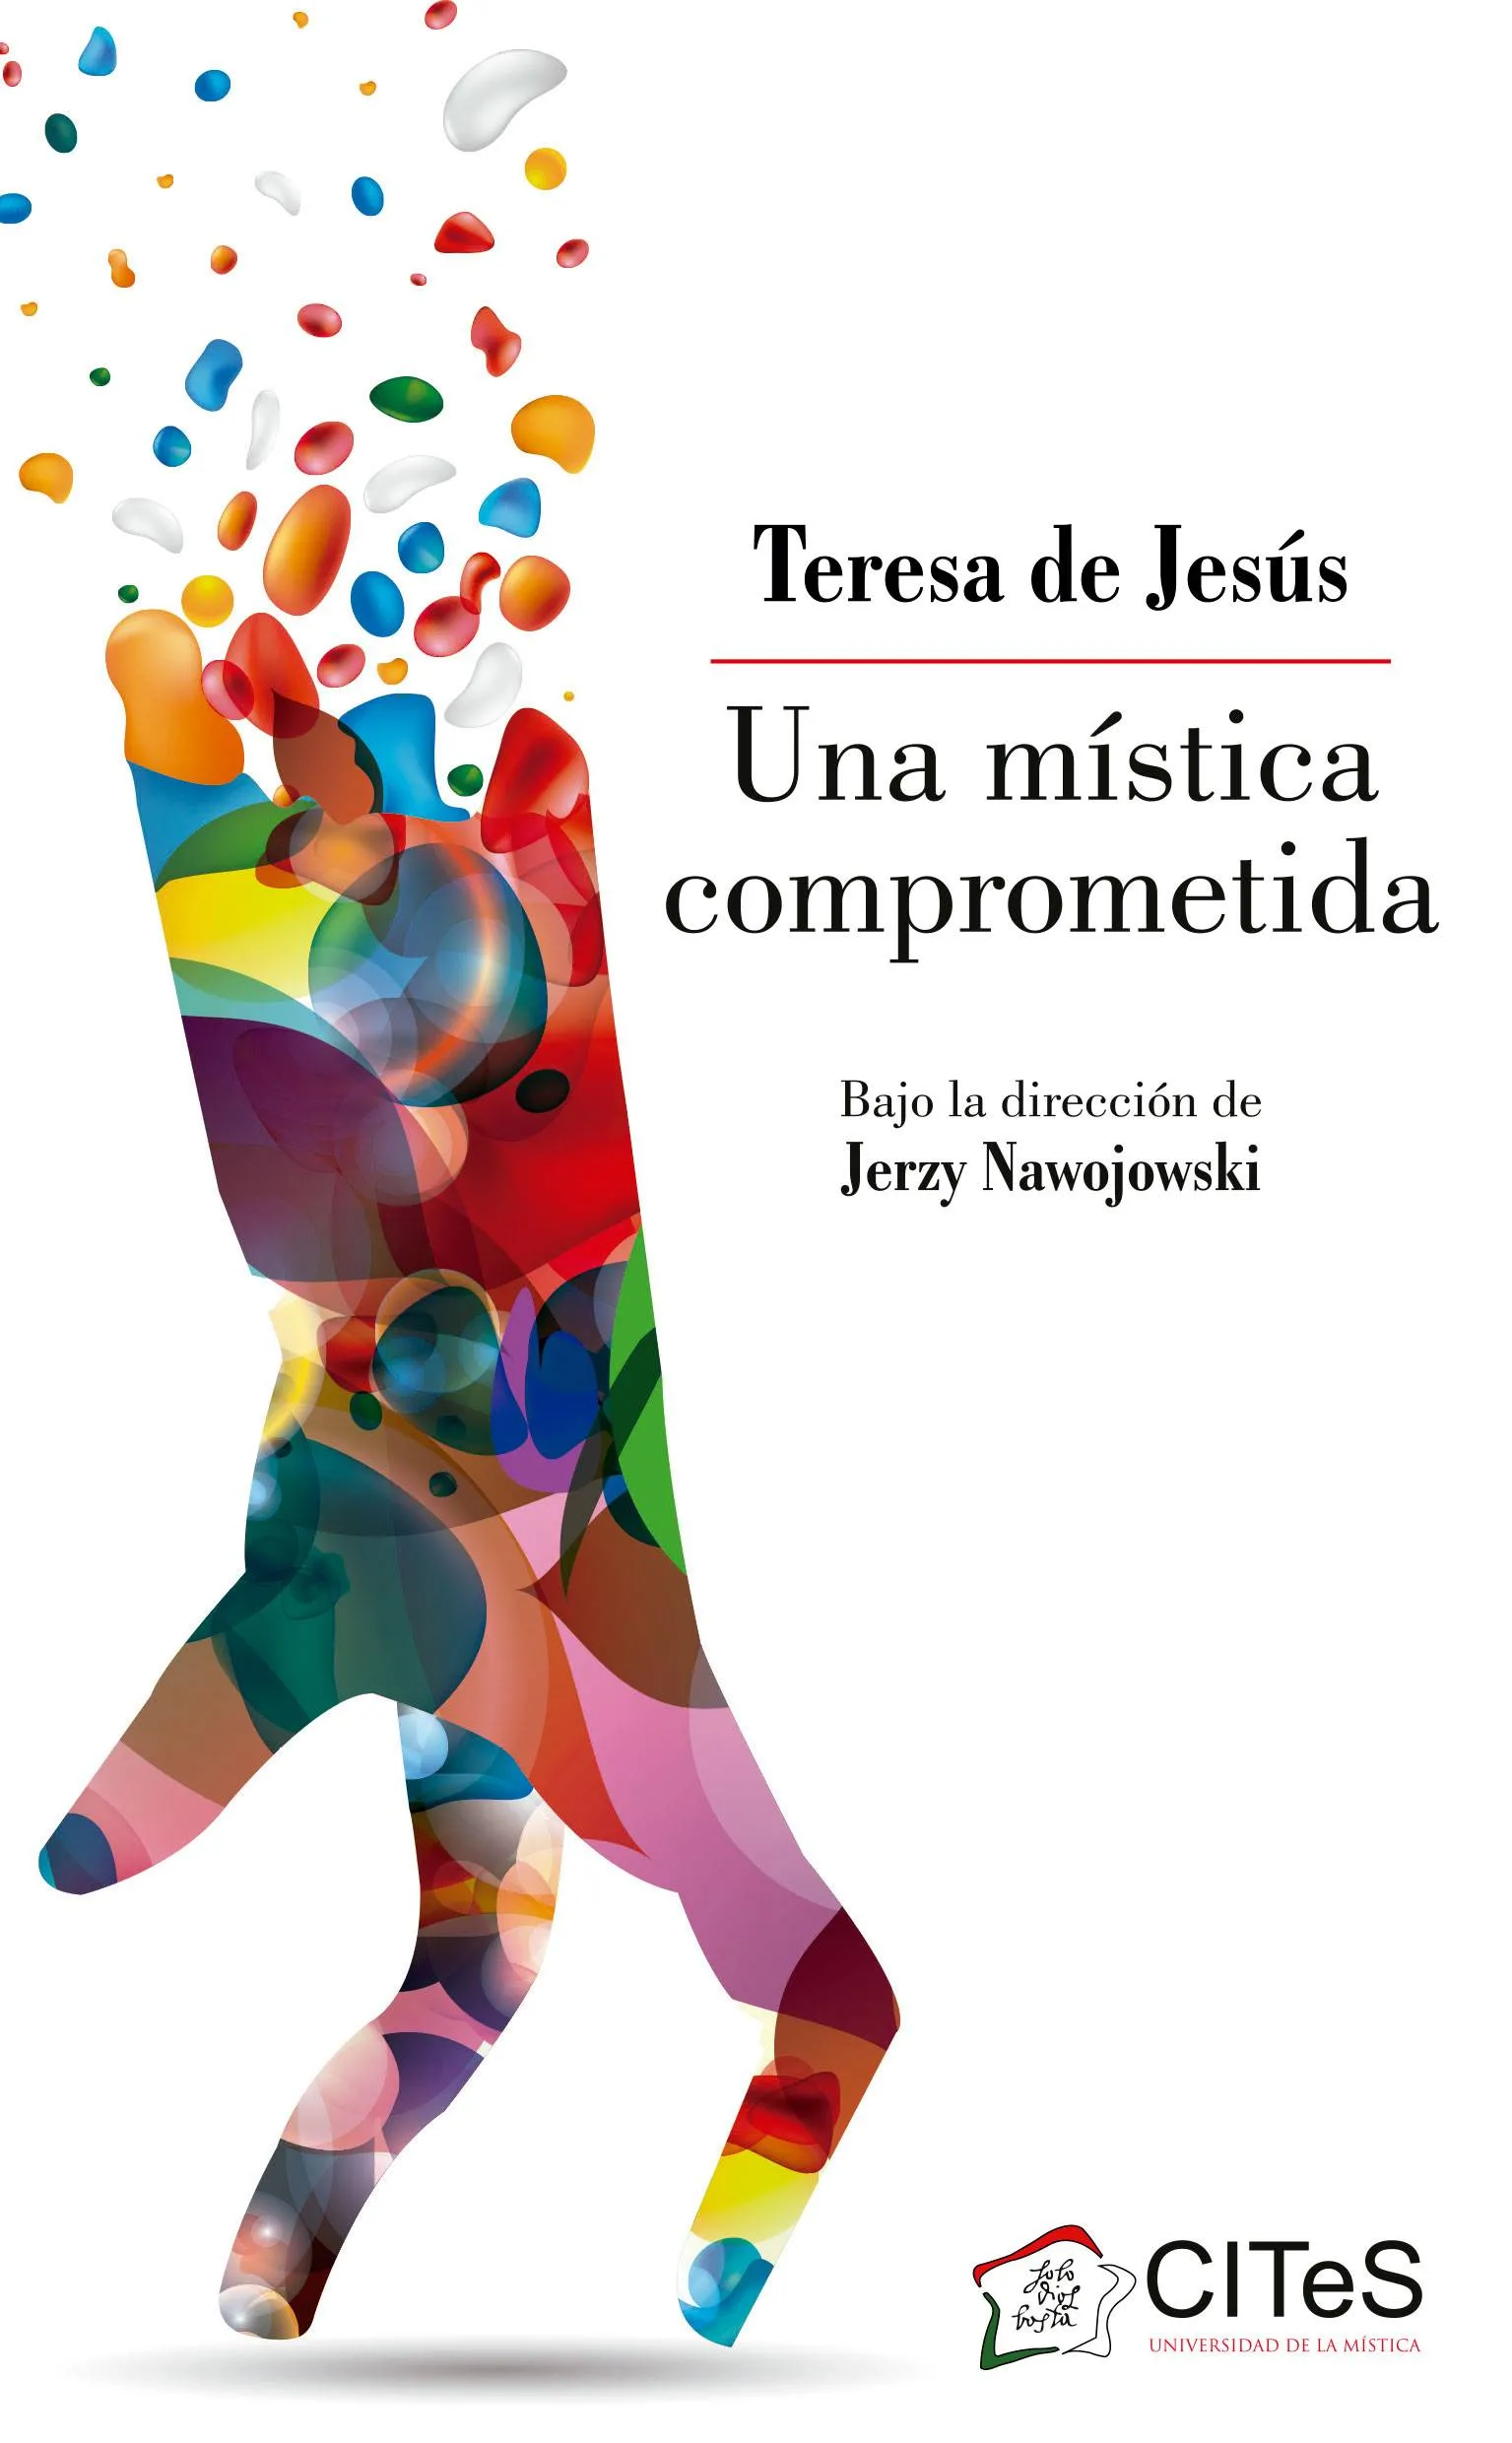 Teresa de Jesús una mística comprometida